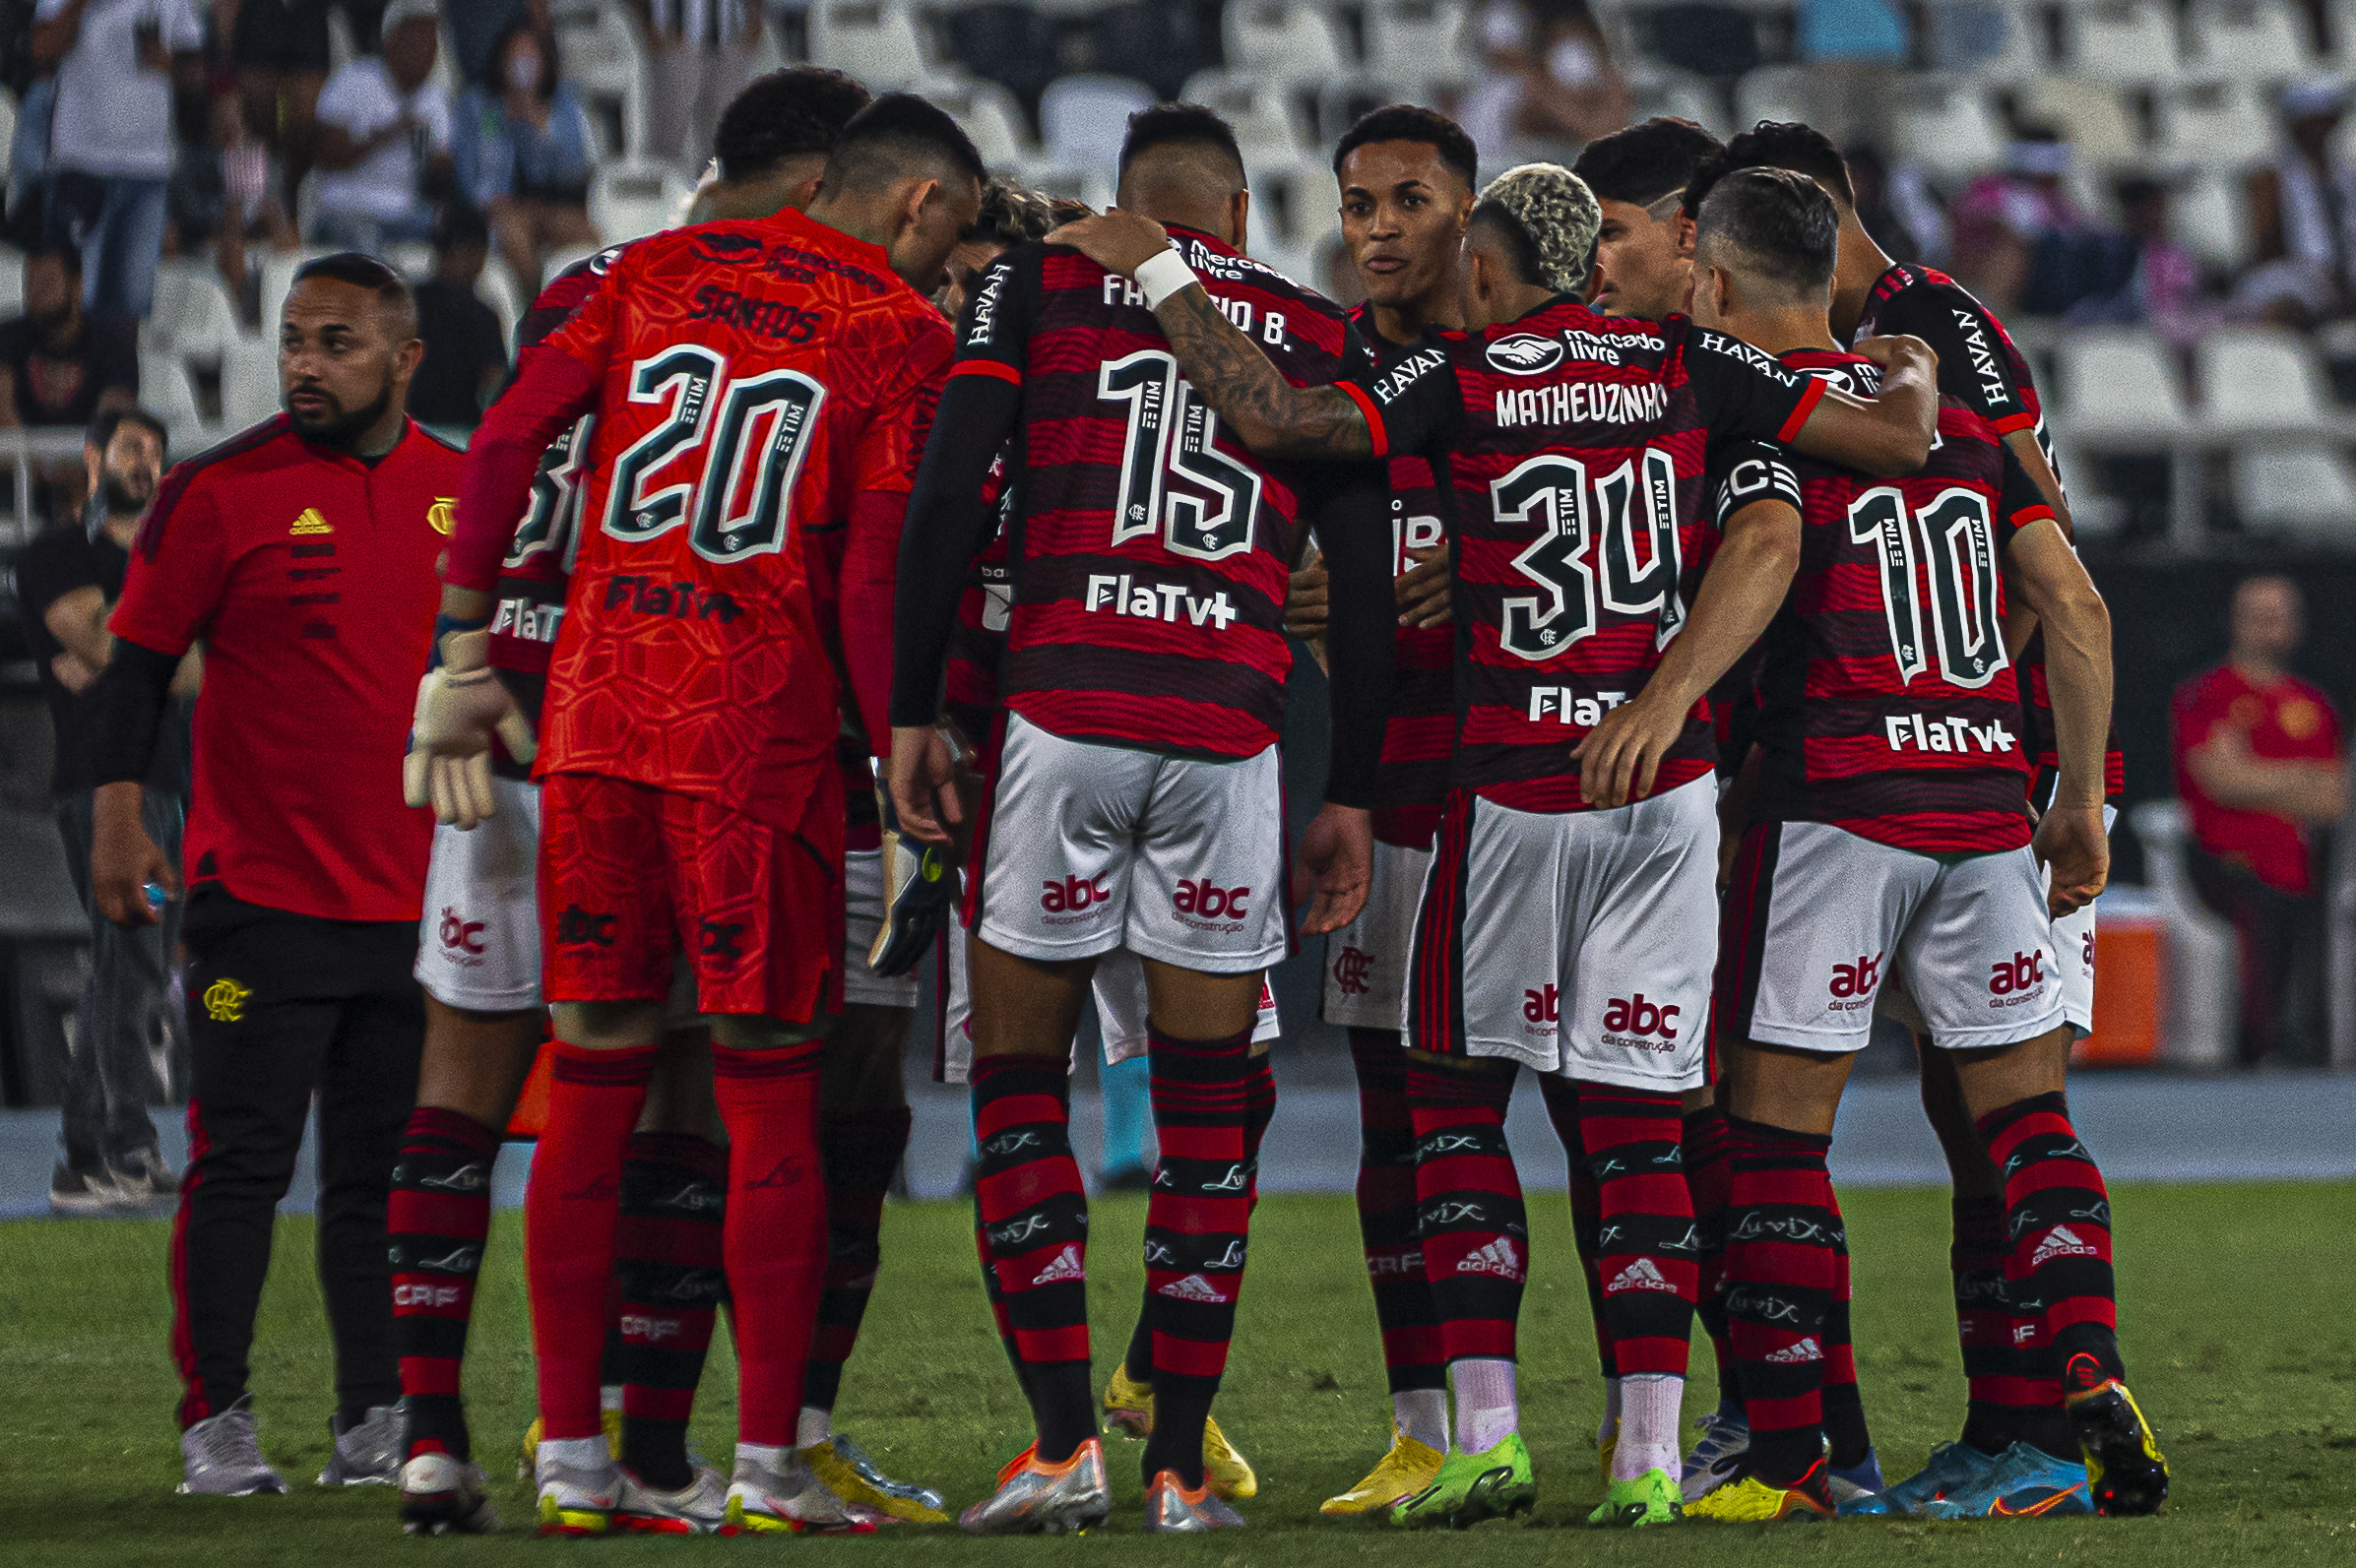 Dois jogadores do Flamengo são indicados para prêmios individuais na Copa do Brasil